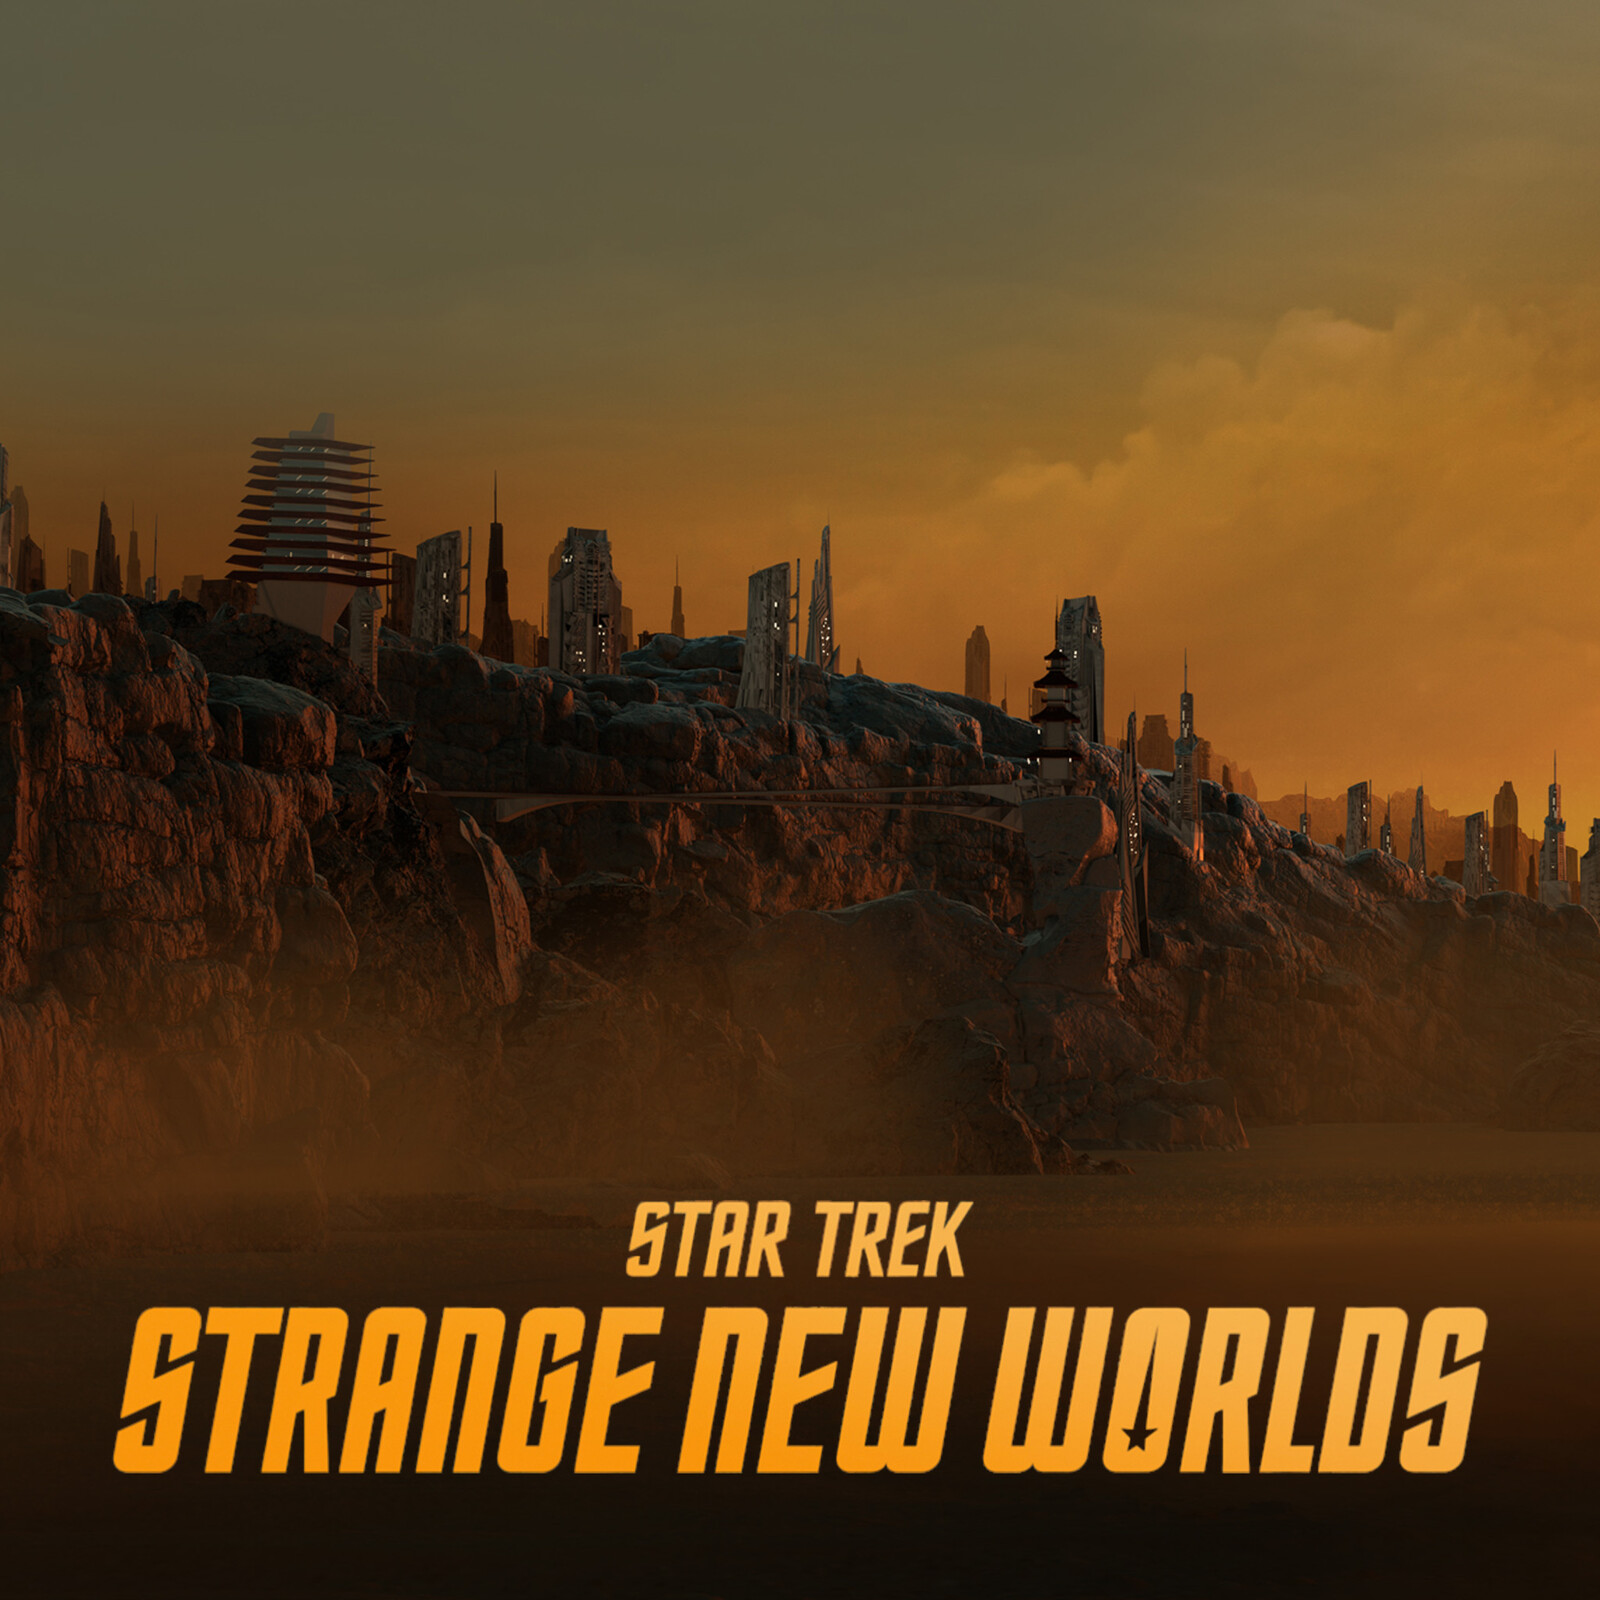 Star Trek: Strange New Worlds - Vulcan, Raal